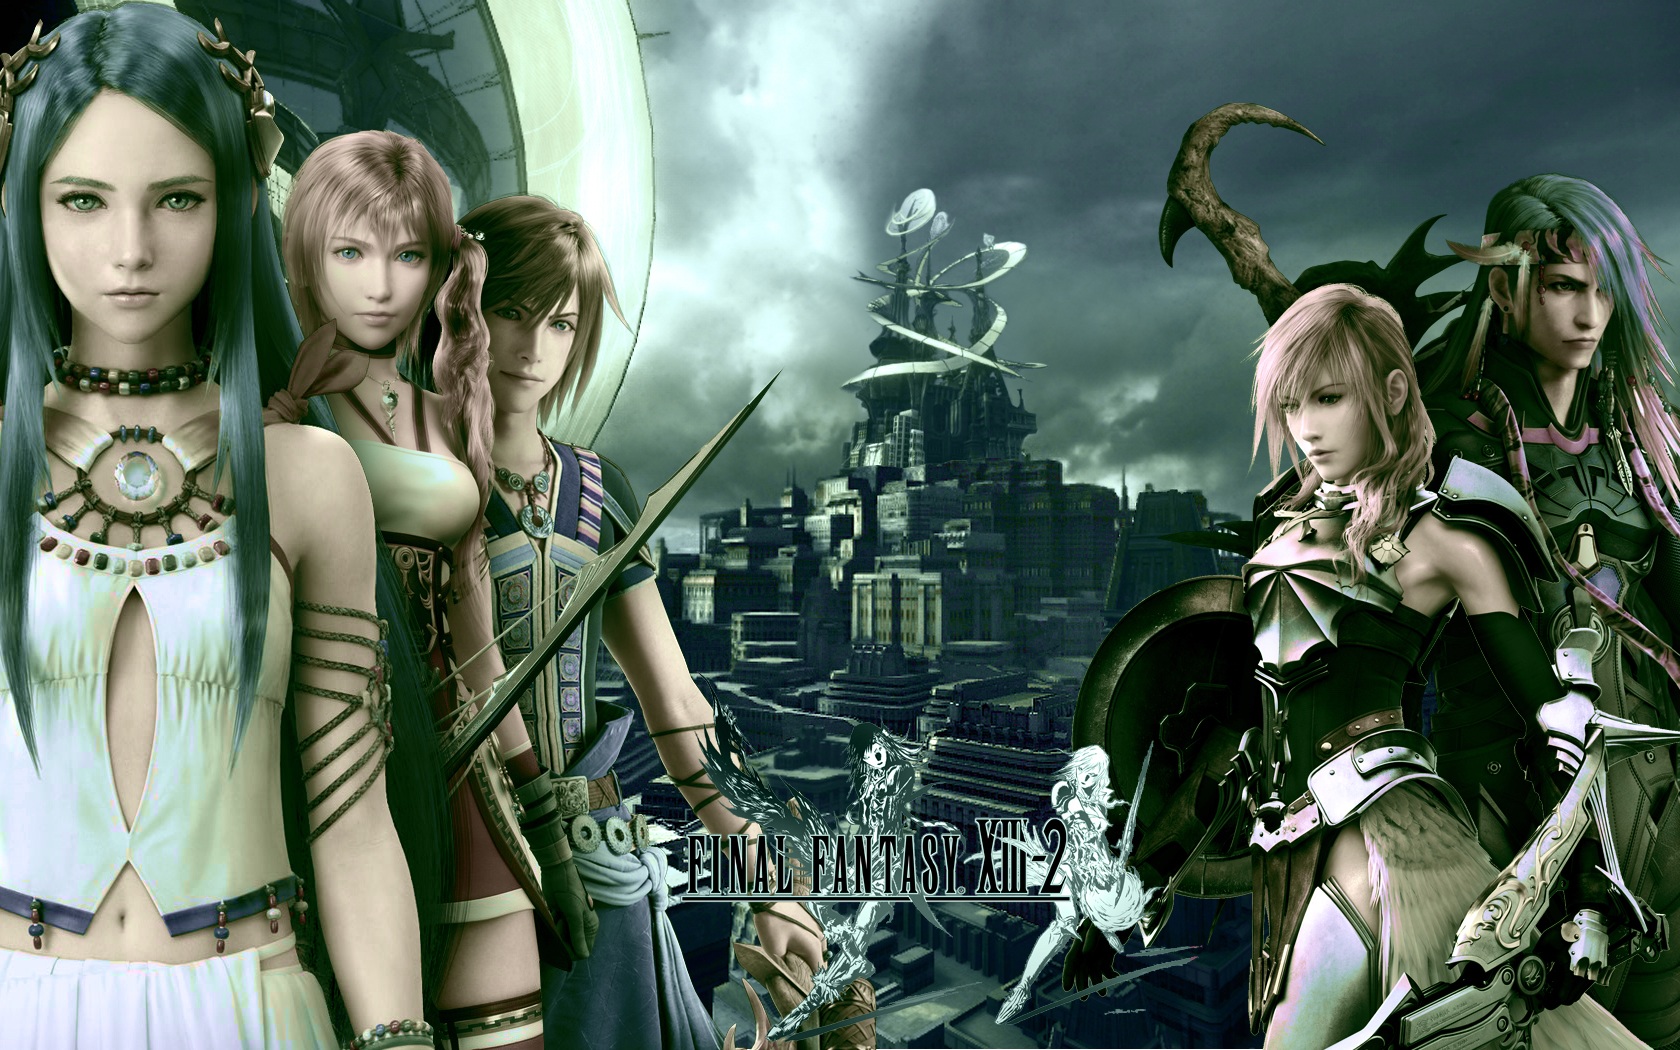 Lightning, Final Fantasy XIII-2, Wallpaper